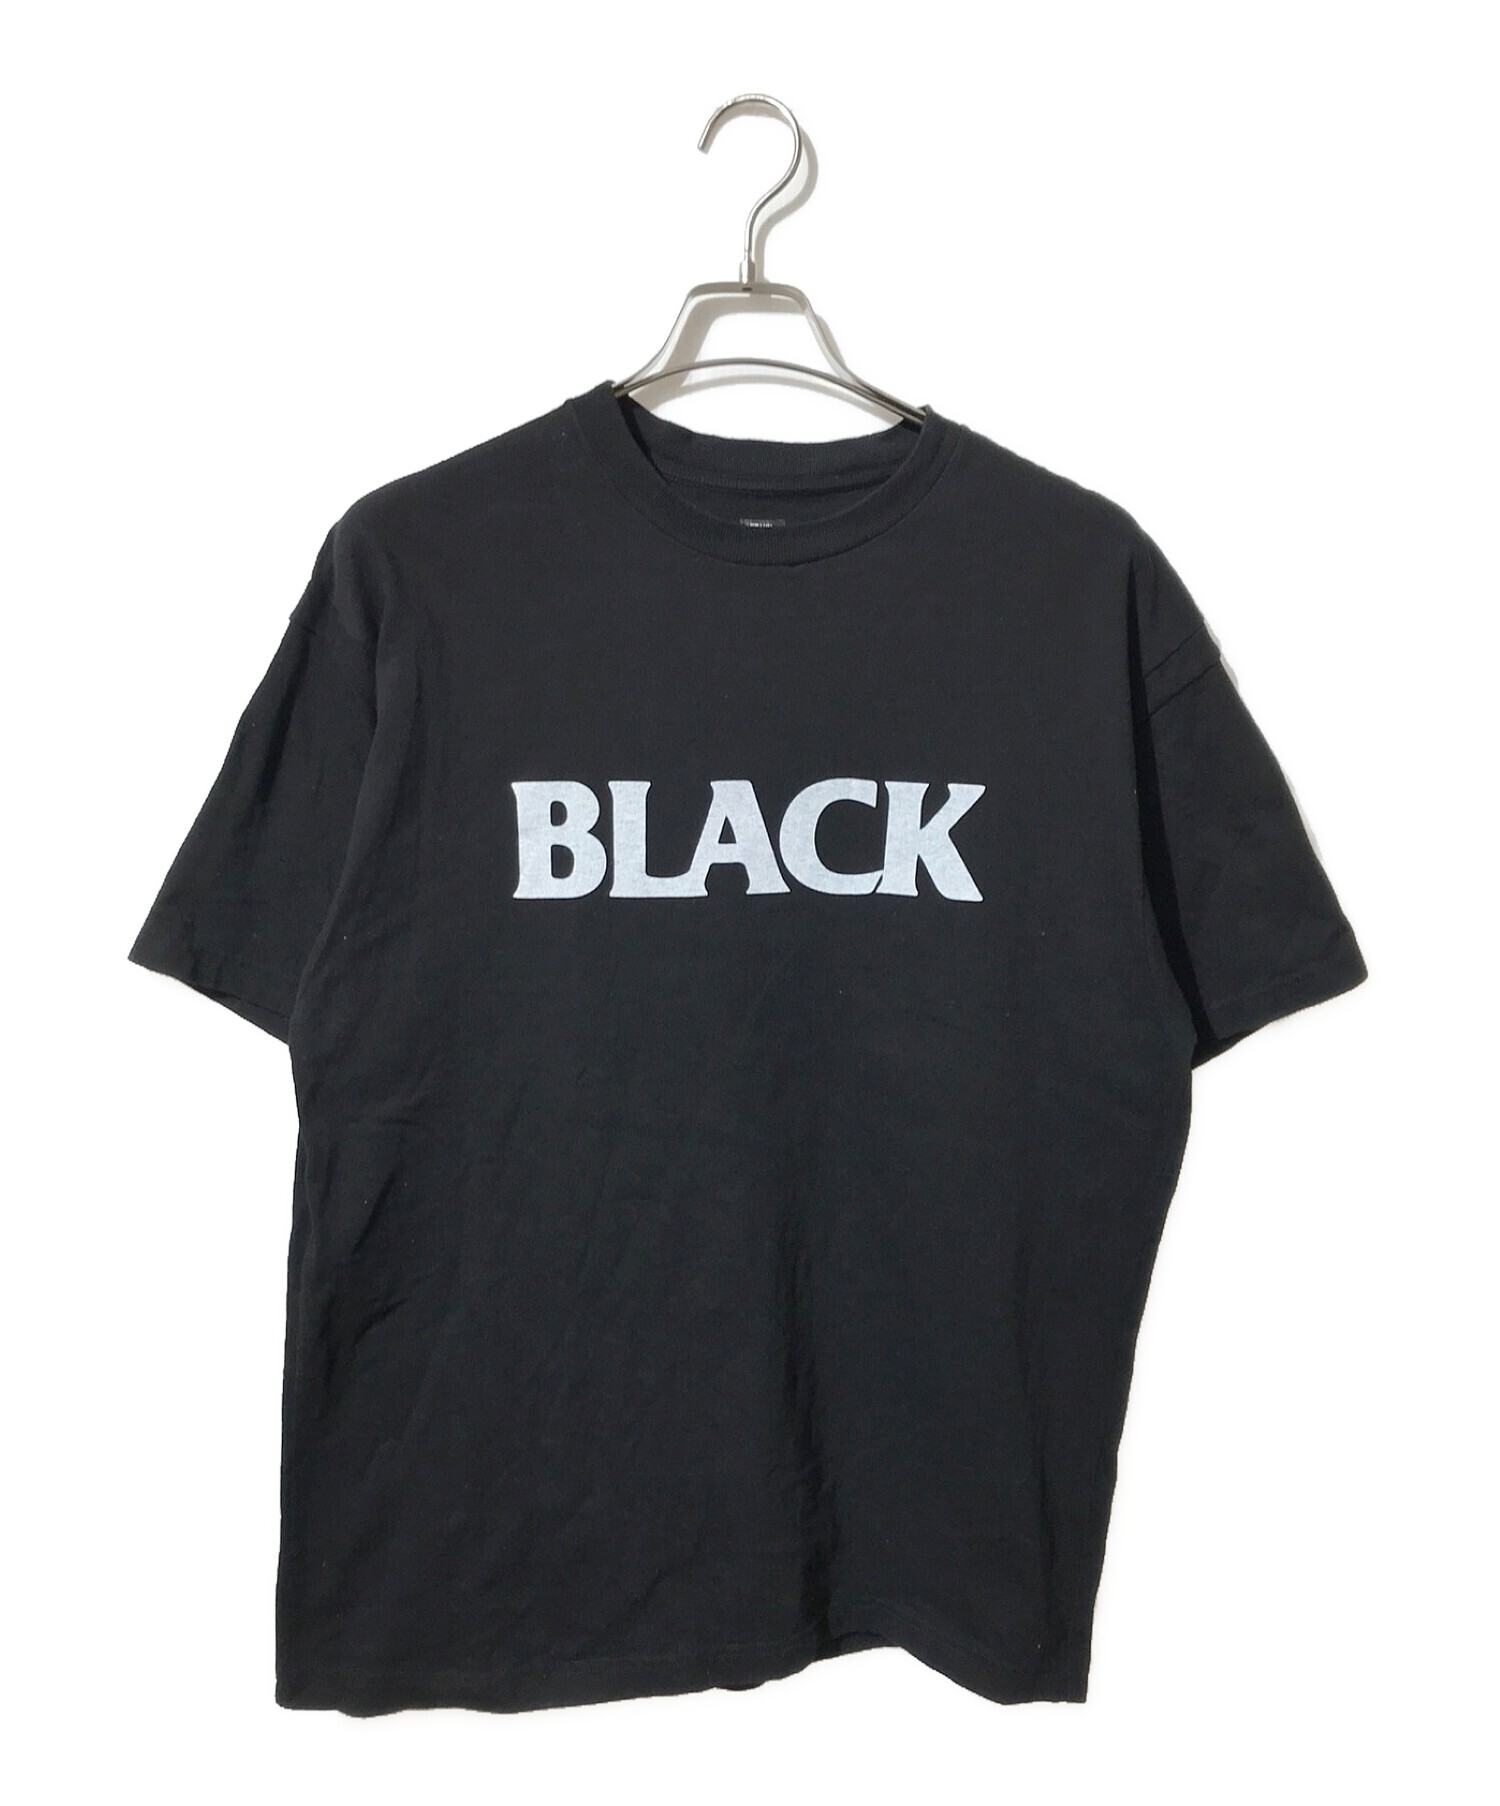 中古・古着通販】SEQUEL (シークエル) BLACK PRINT TEE ブラック 